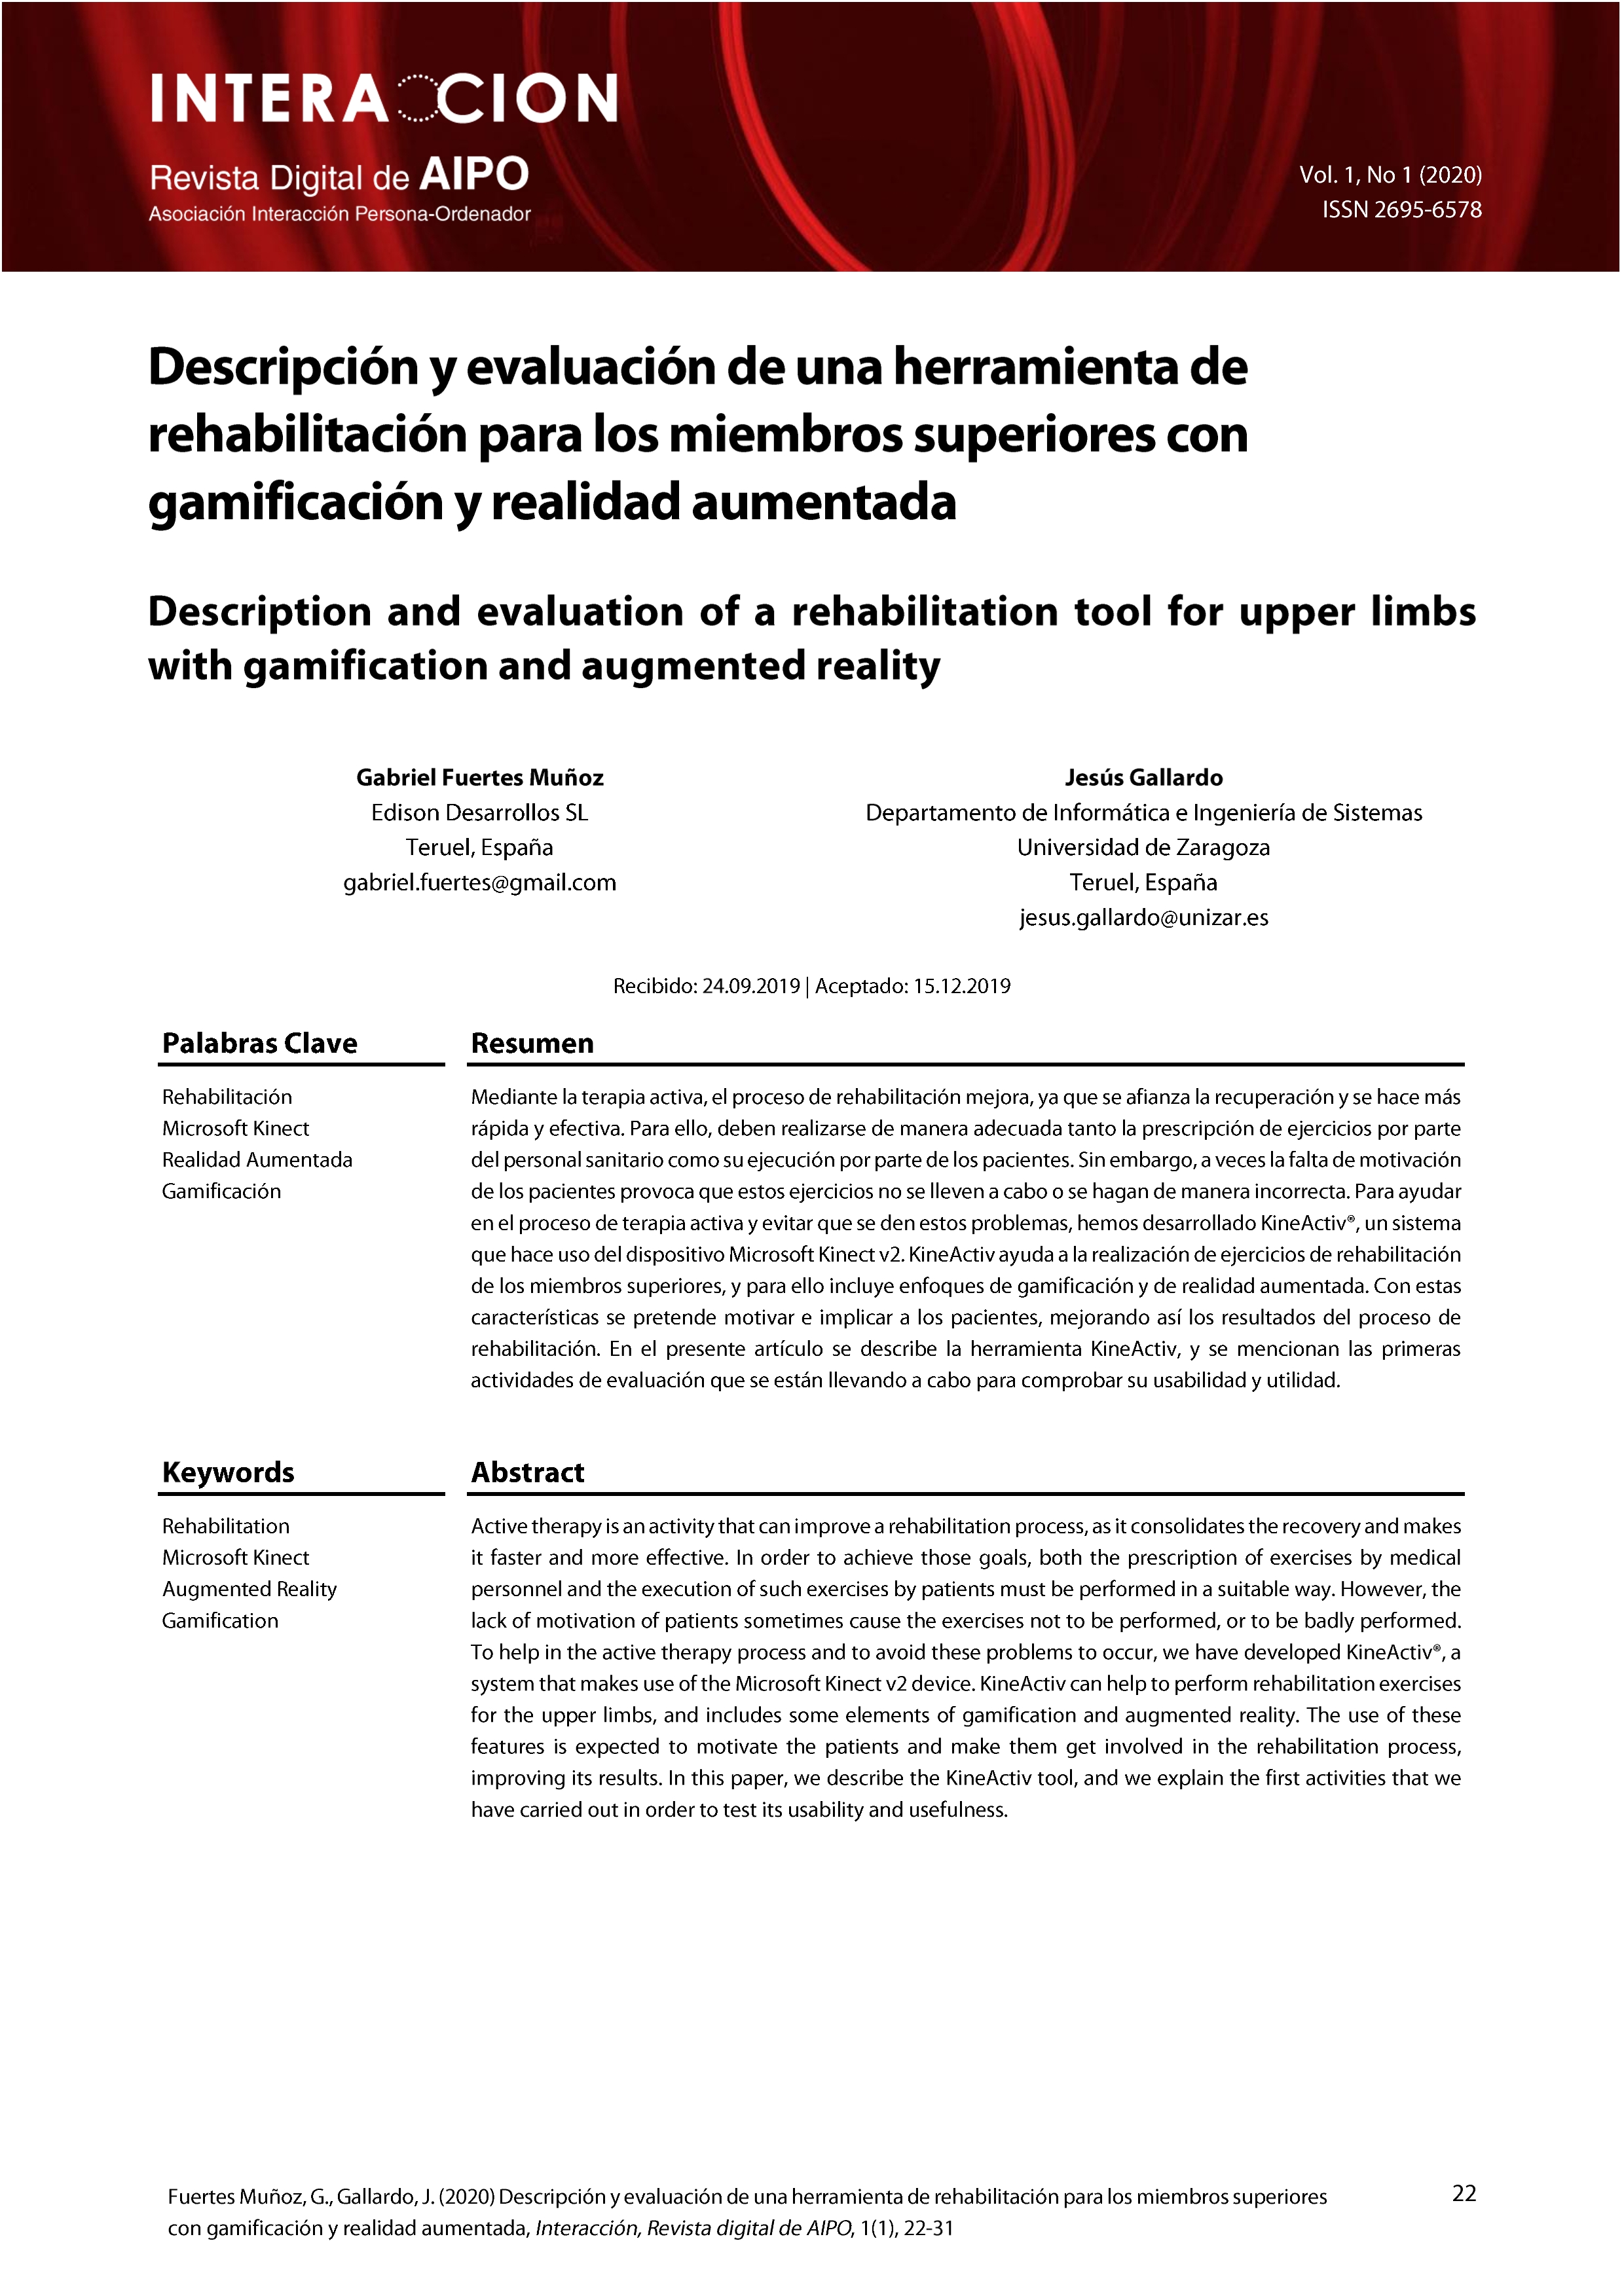 Descripción y evaluación de una herramienta de rehabilitación para los miembros superiores con gamificación y realidad aumentada